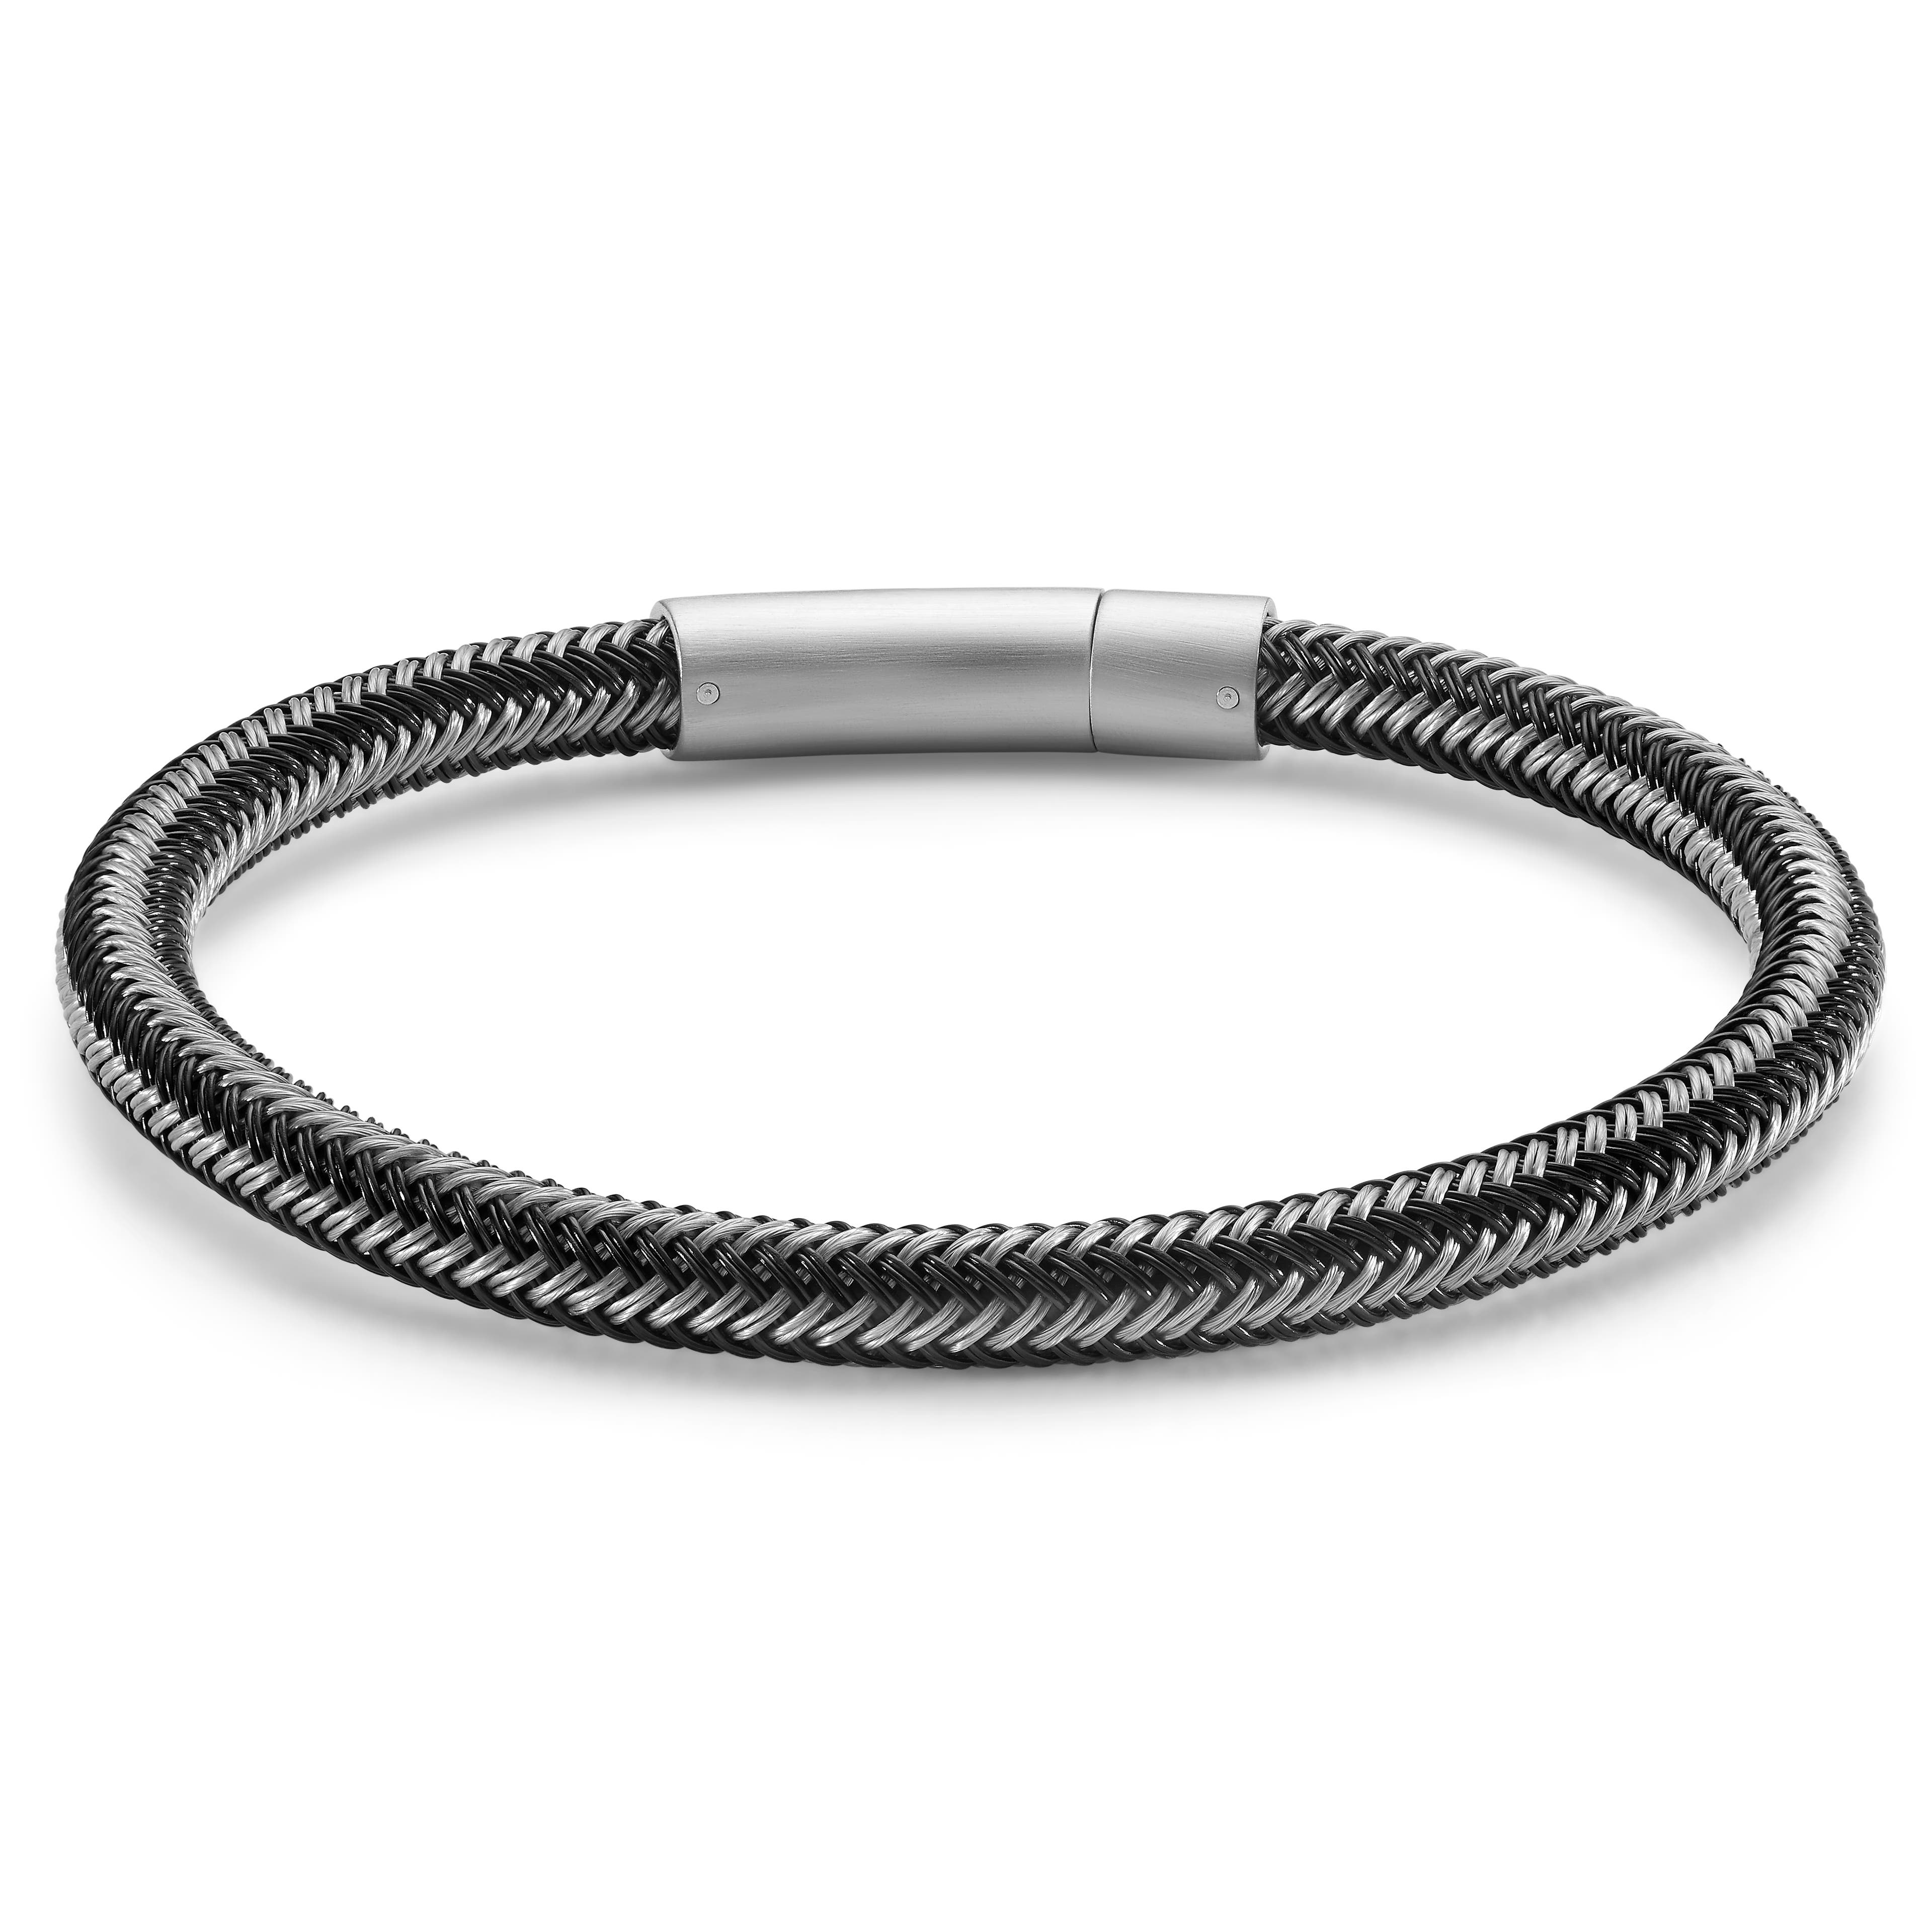 Black & Silver-Tone Cable Bracelet